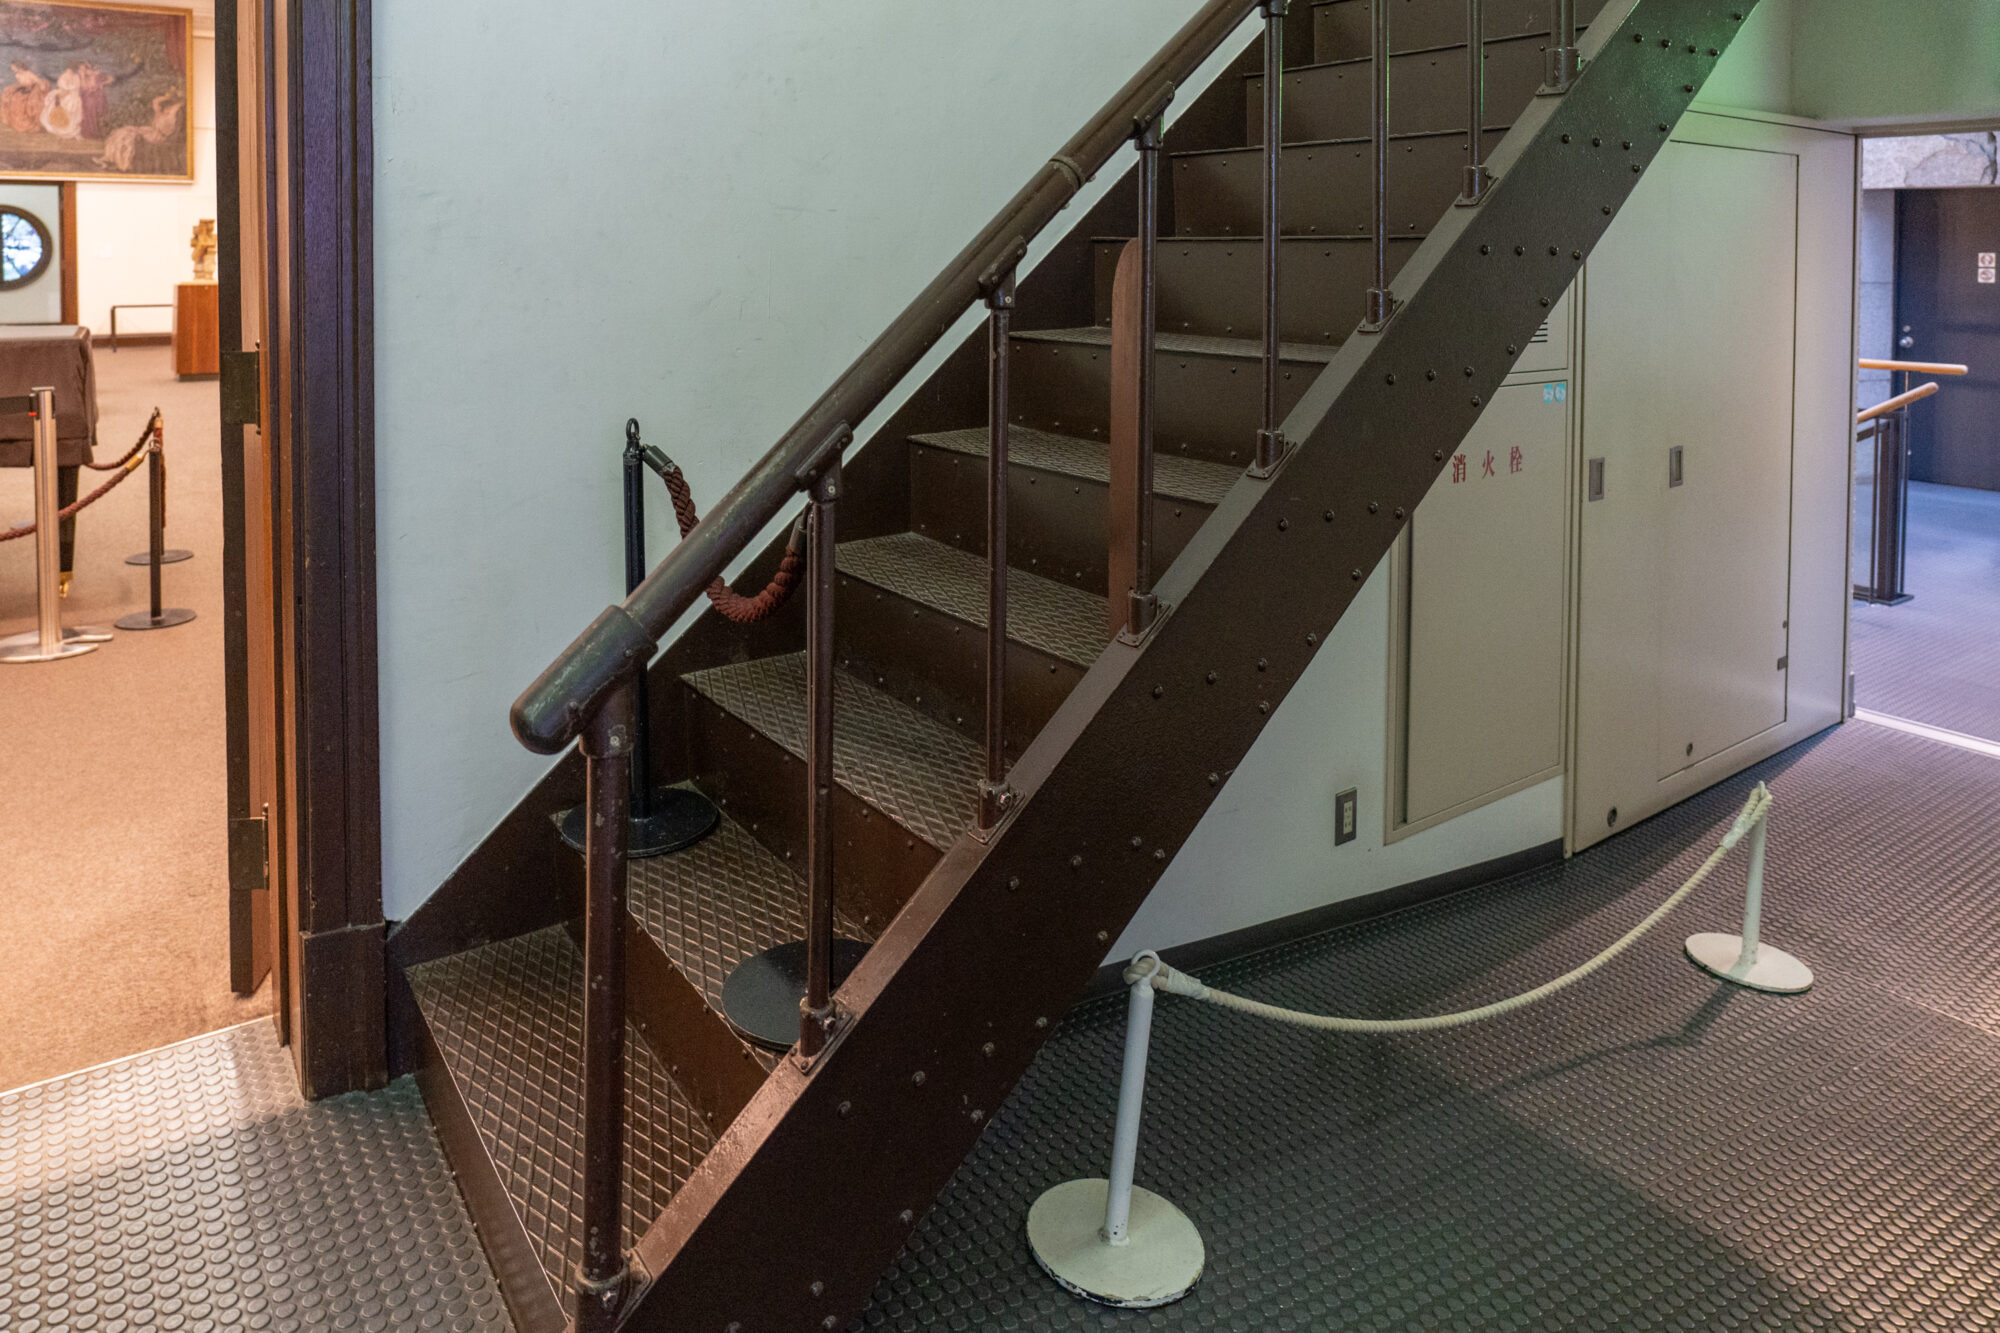 増築工事後は観覧ルートになっているが、本来は「裏口」であったため階段の作りは質素